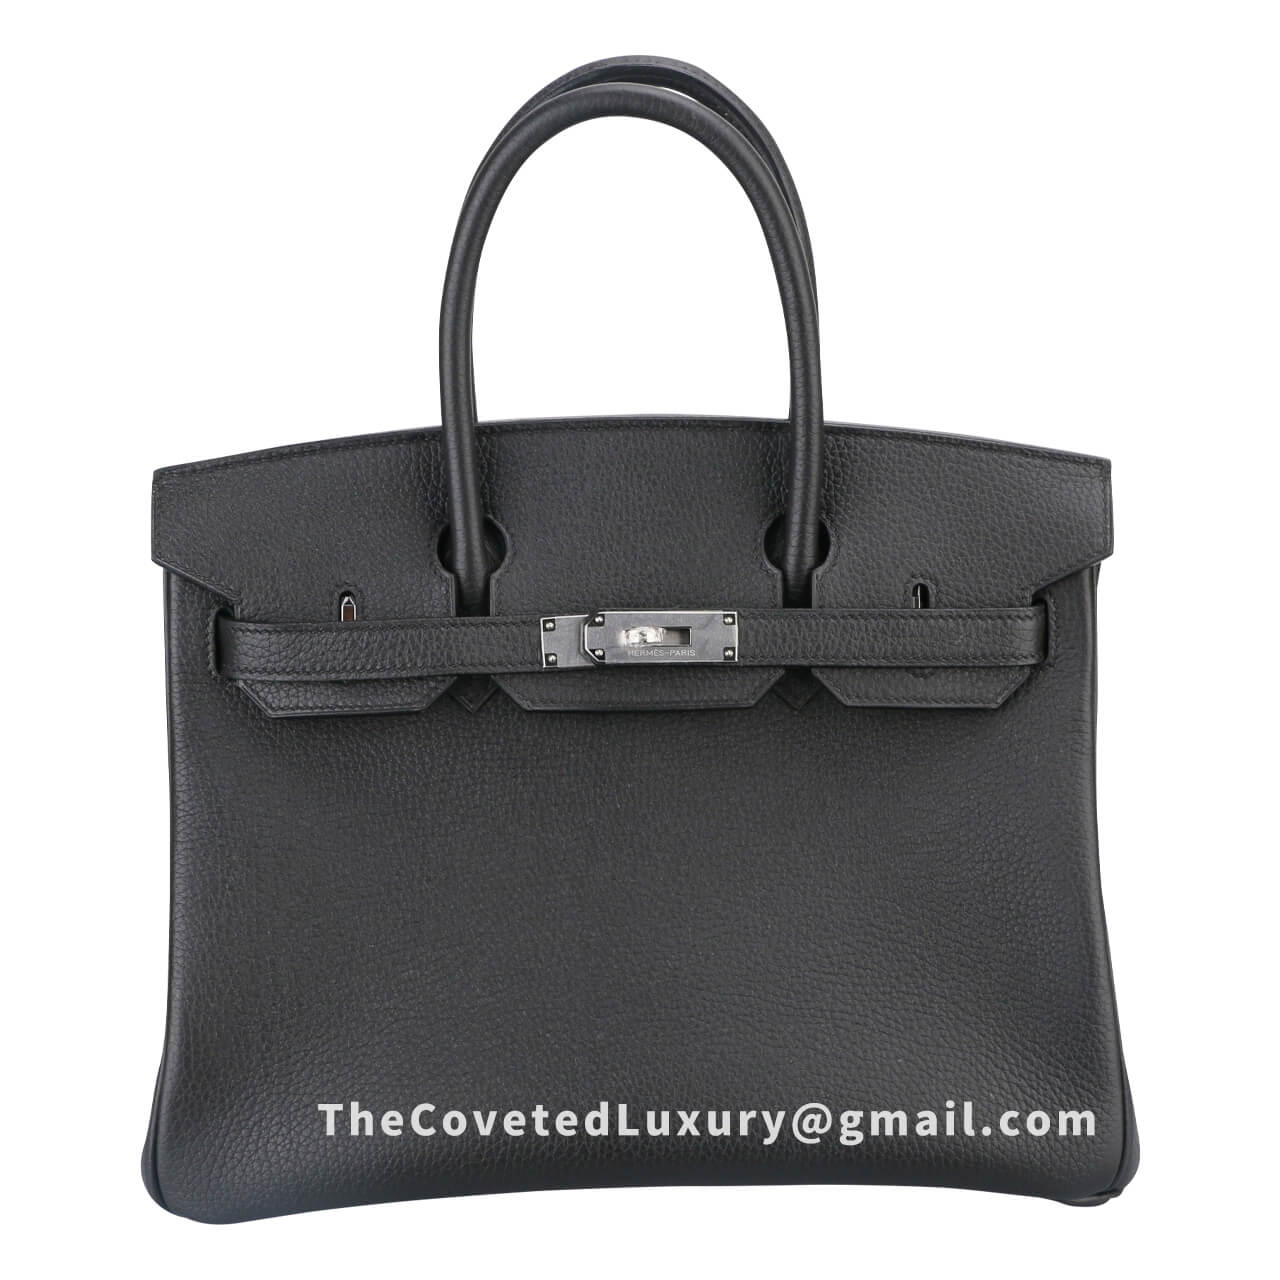 Replica Hermes Handbags Store: High Quality Hermes Egee Clutch Replica For  Sale